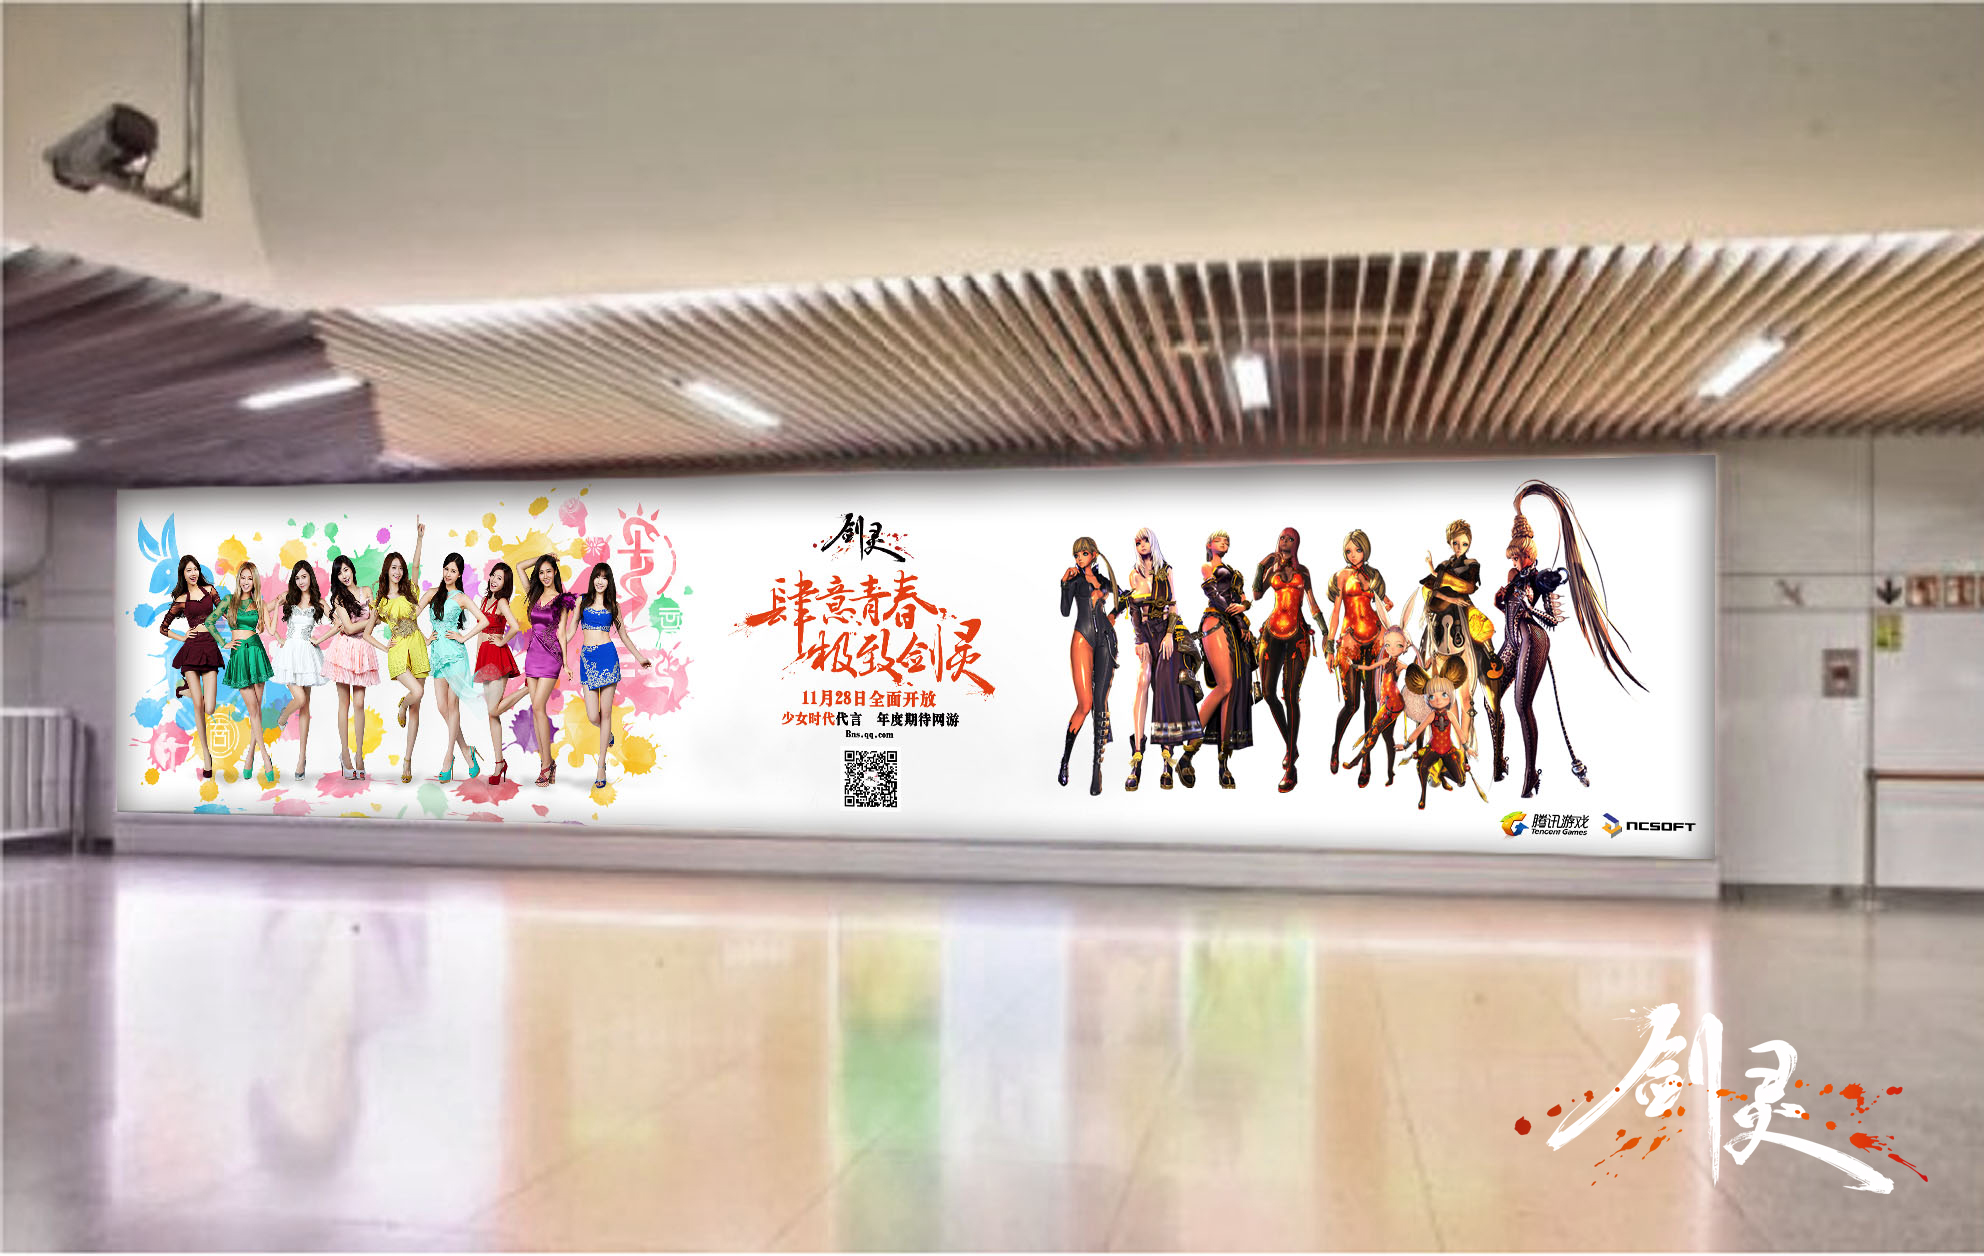 少女时代广告亮相上海徐家汇 将青春进行到底